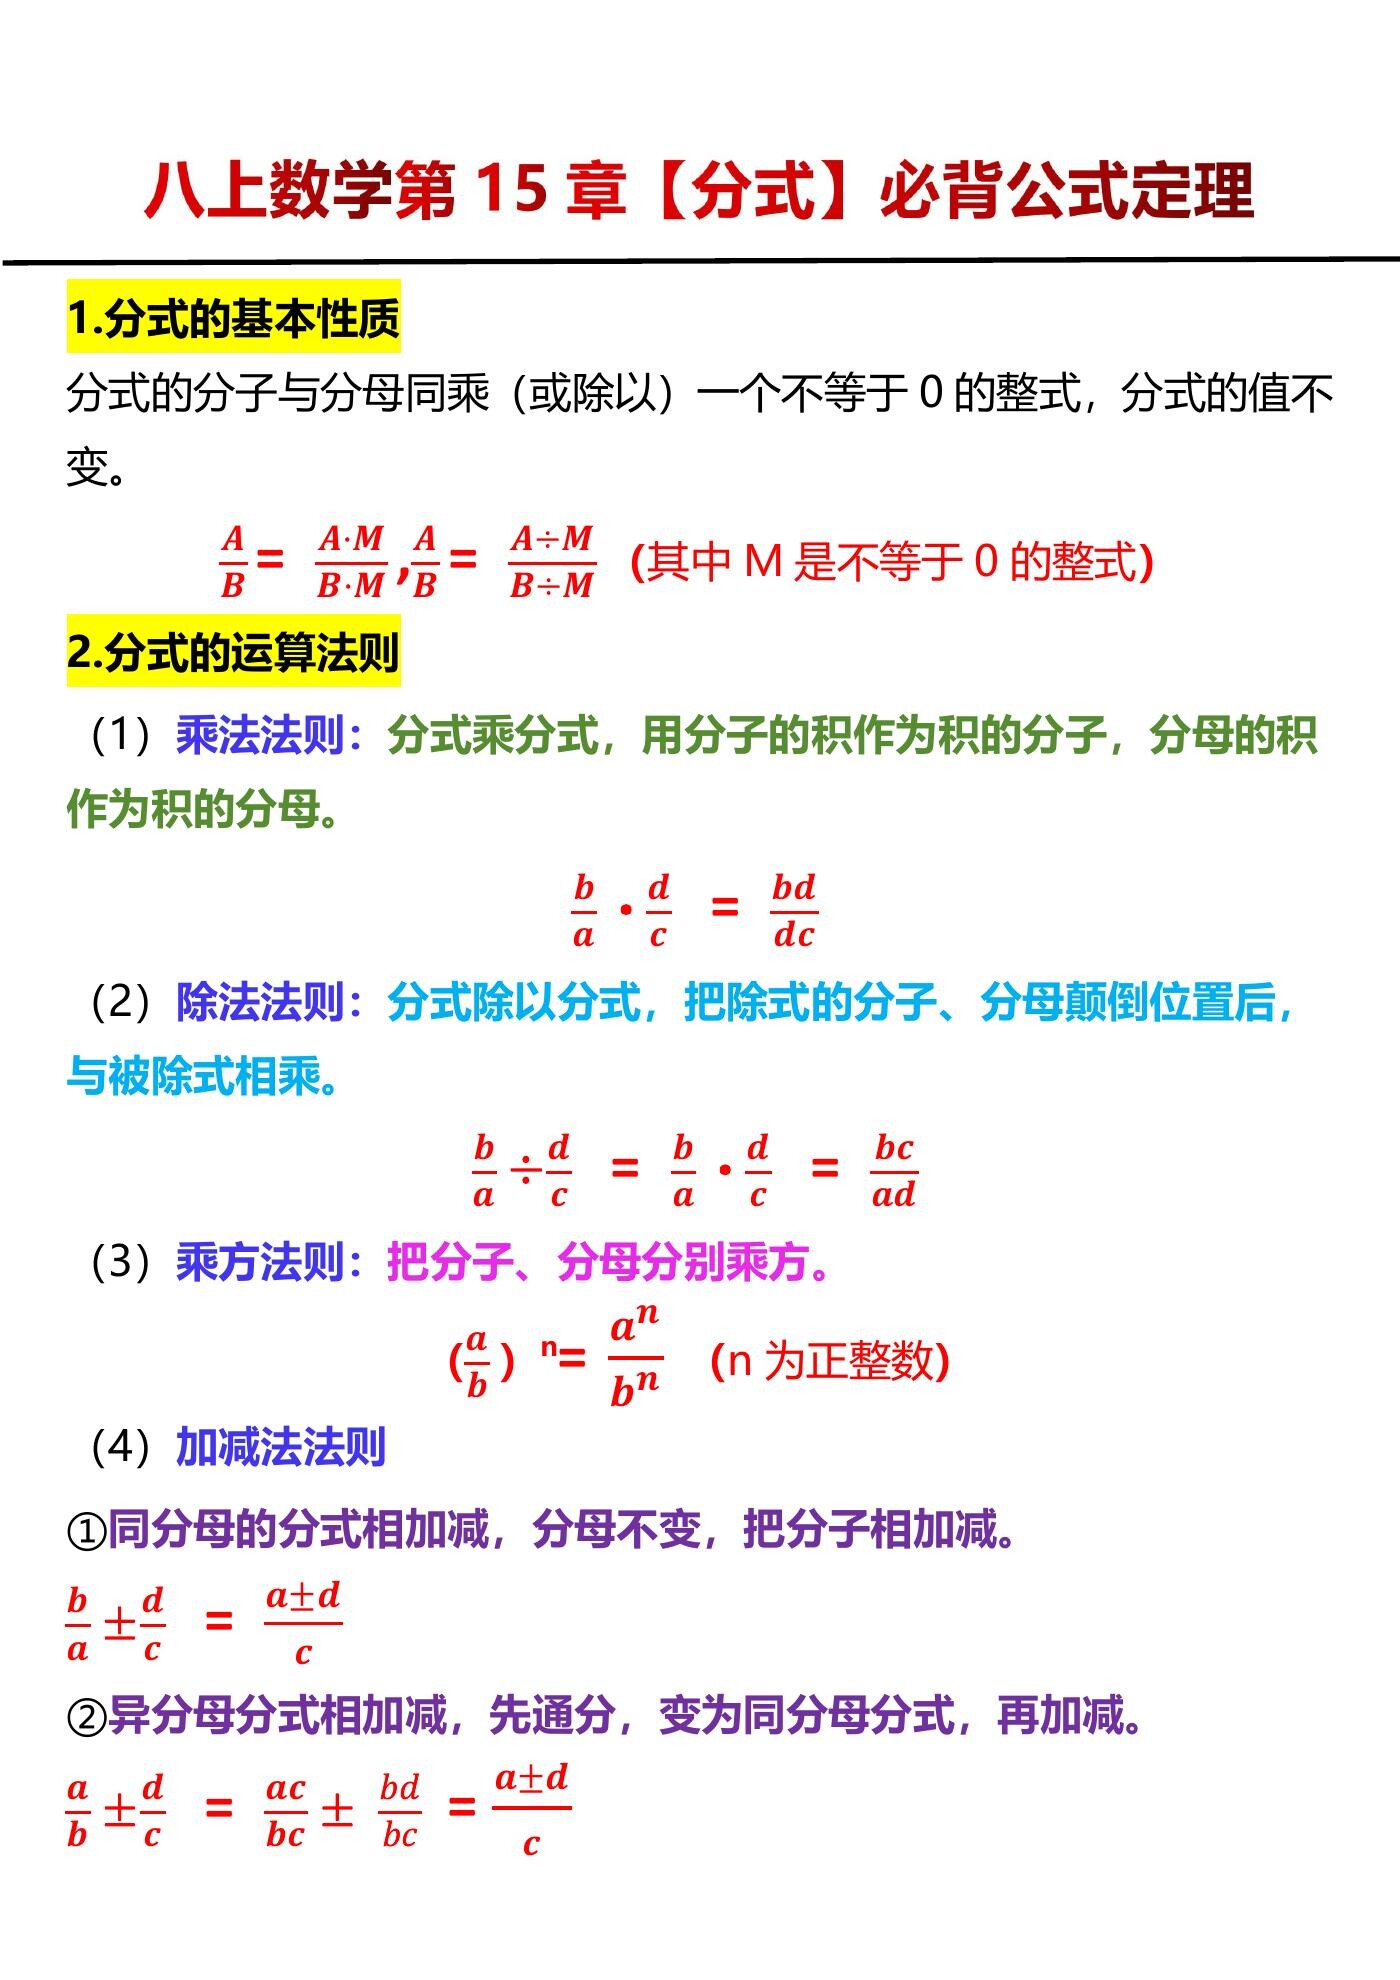 八年级上册数学第15章【分式】必背公式定理